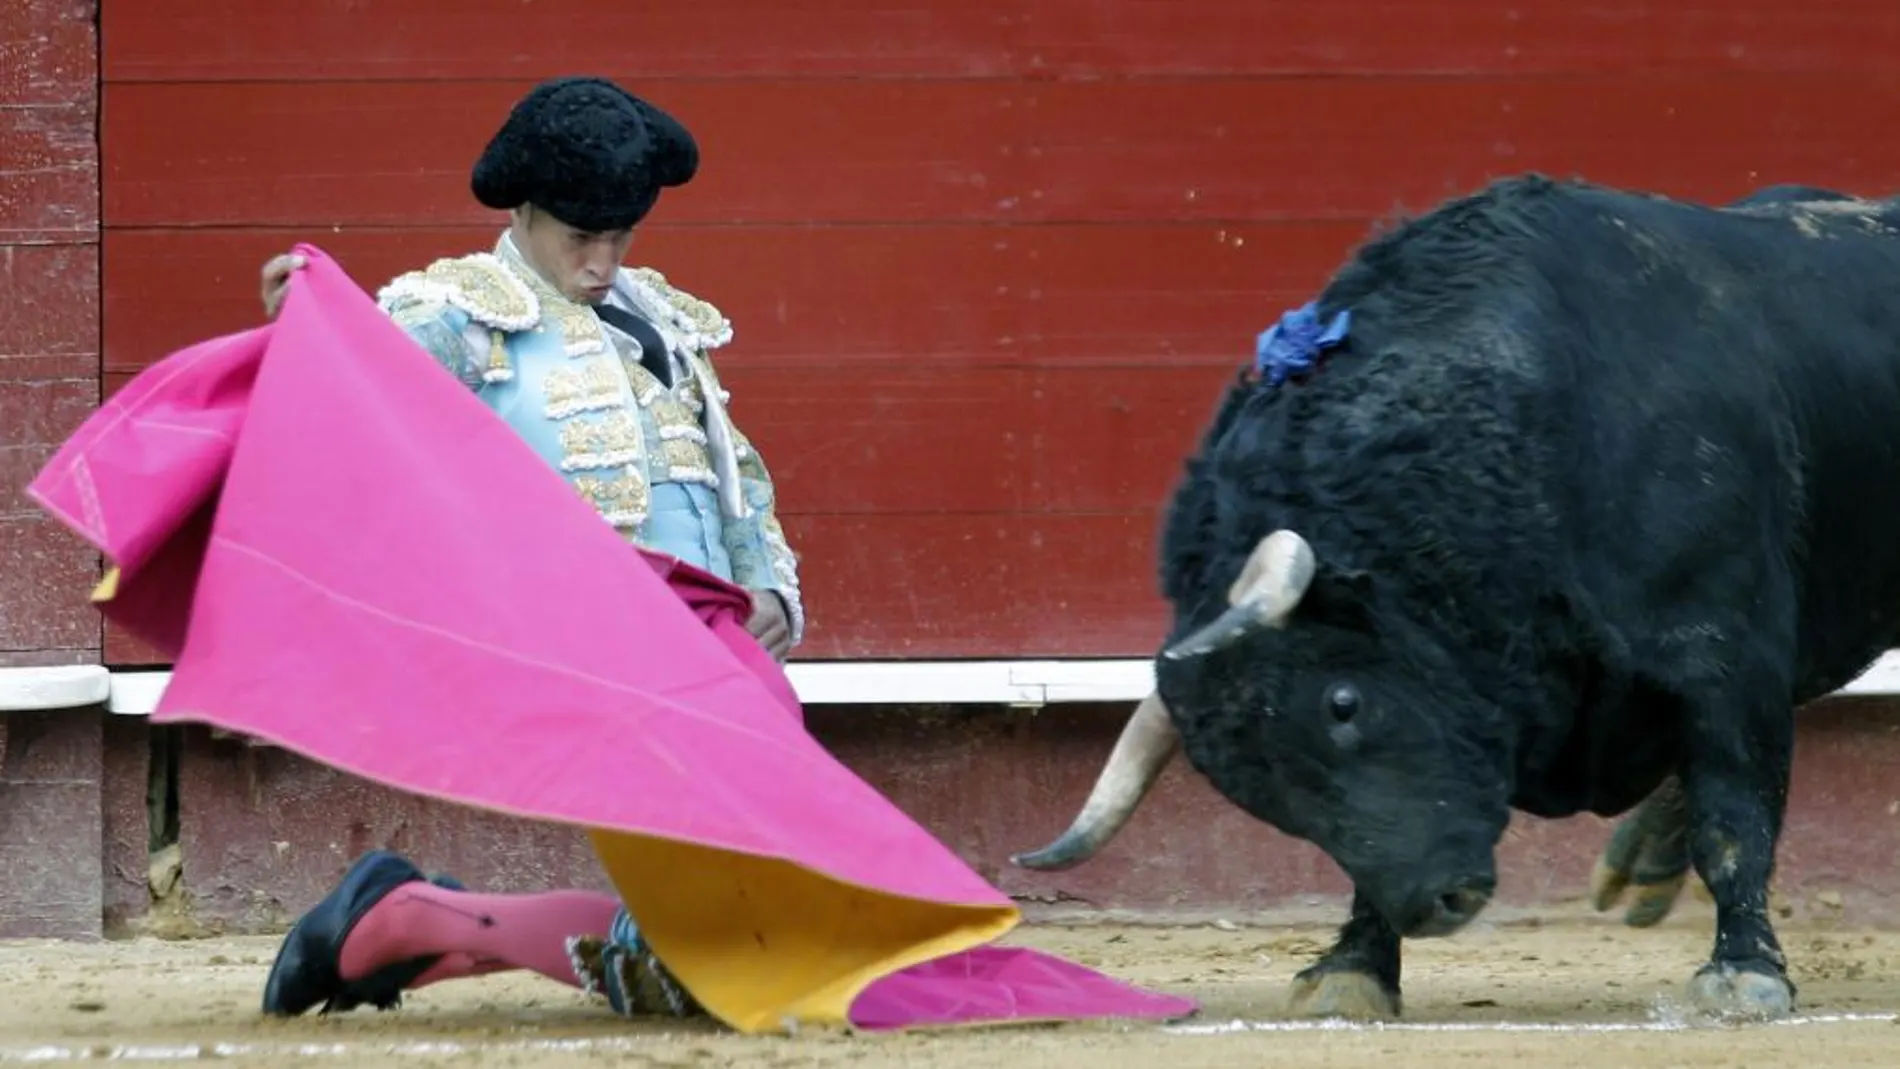 El torero de Orduña lancea a la verónica con ambas rodillas en tierra a uno de sus dos toros de Jandilla de ayer en Valencia